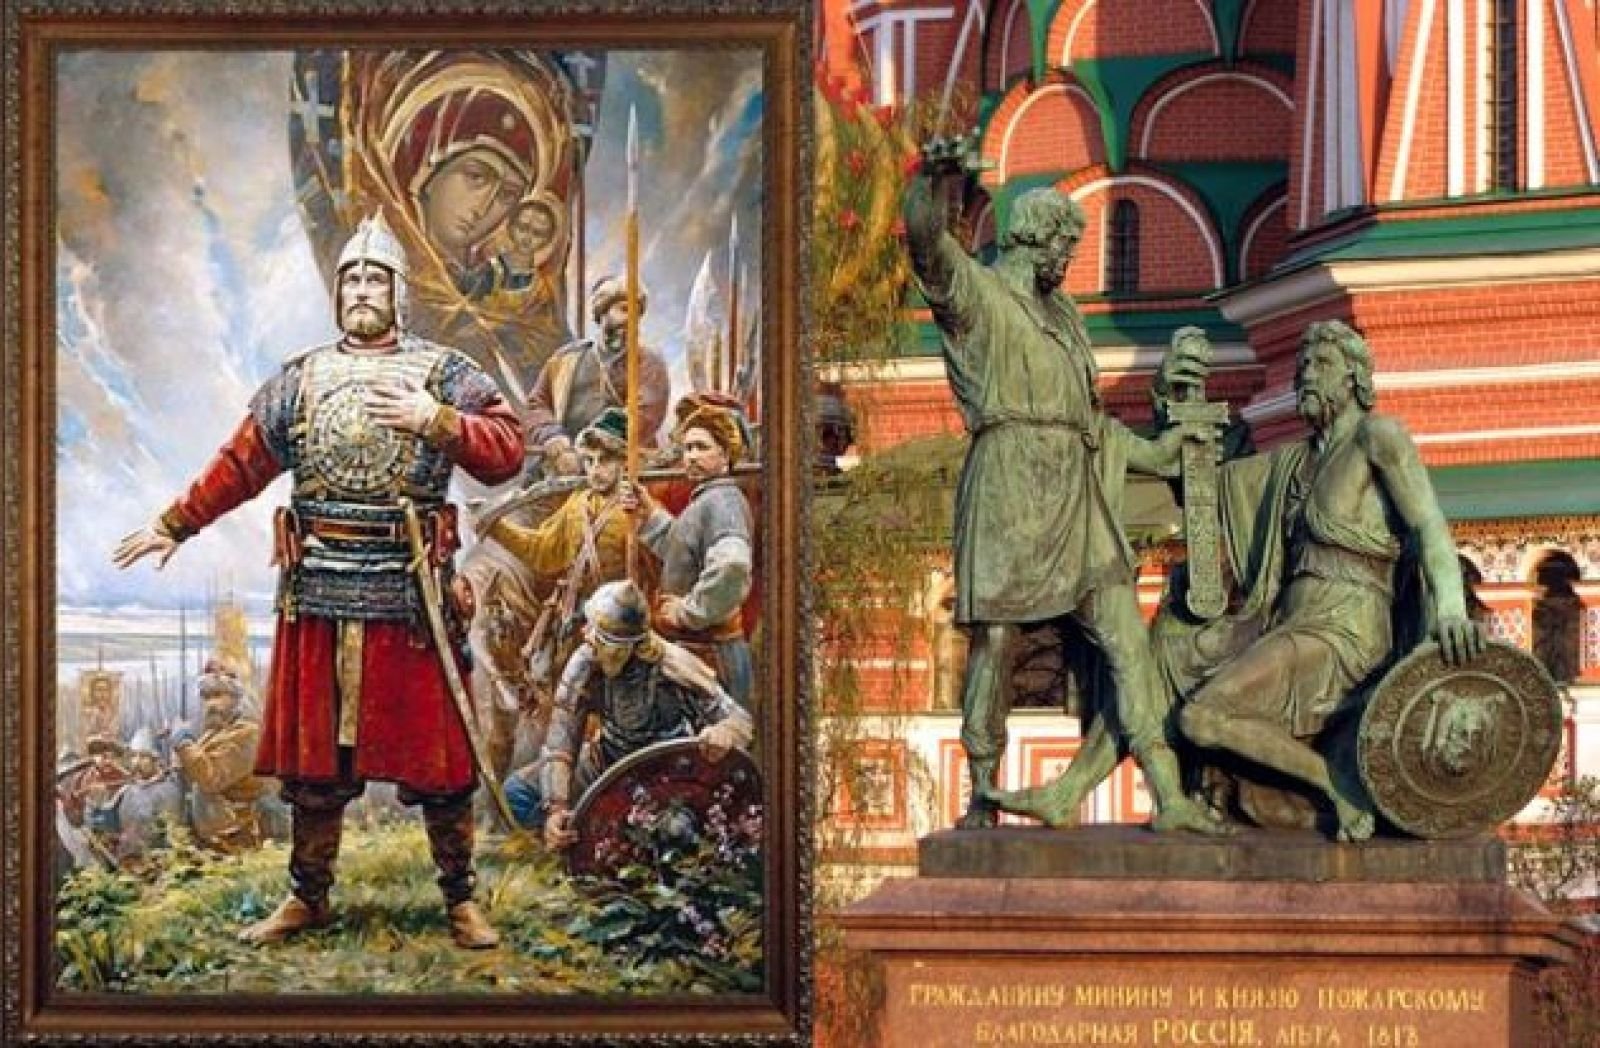 1612 году князь. Ополчение Кузьмы Минина и Дмитрия Пожарского.